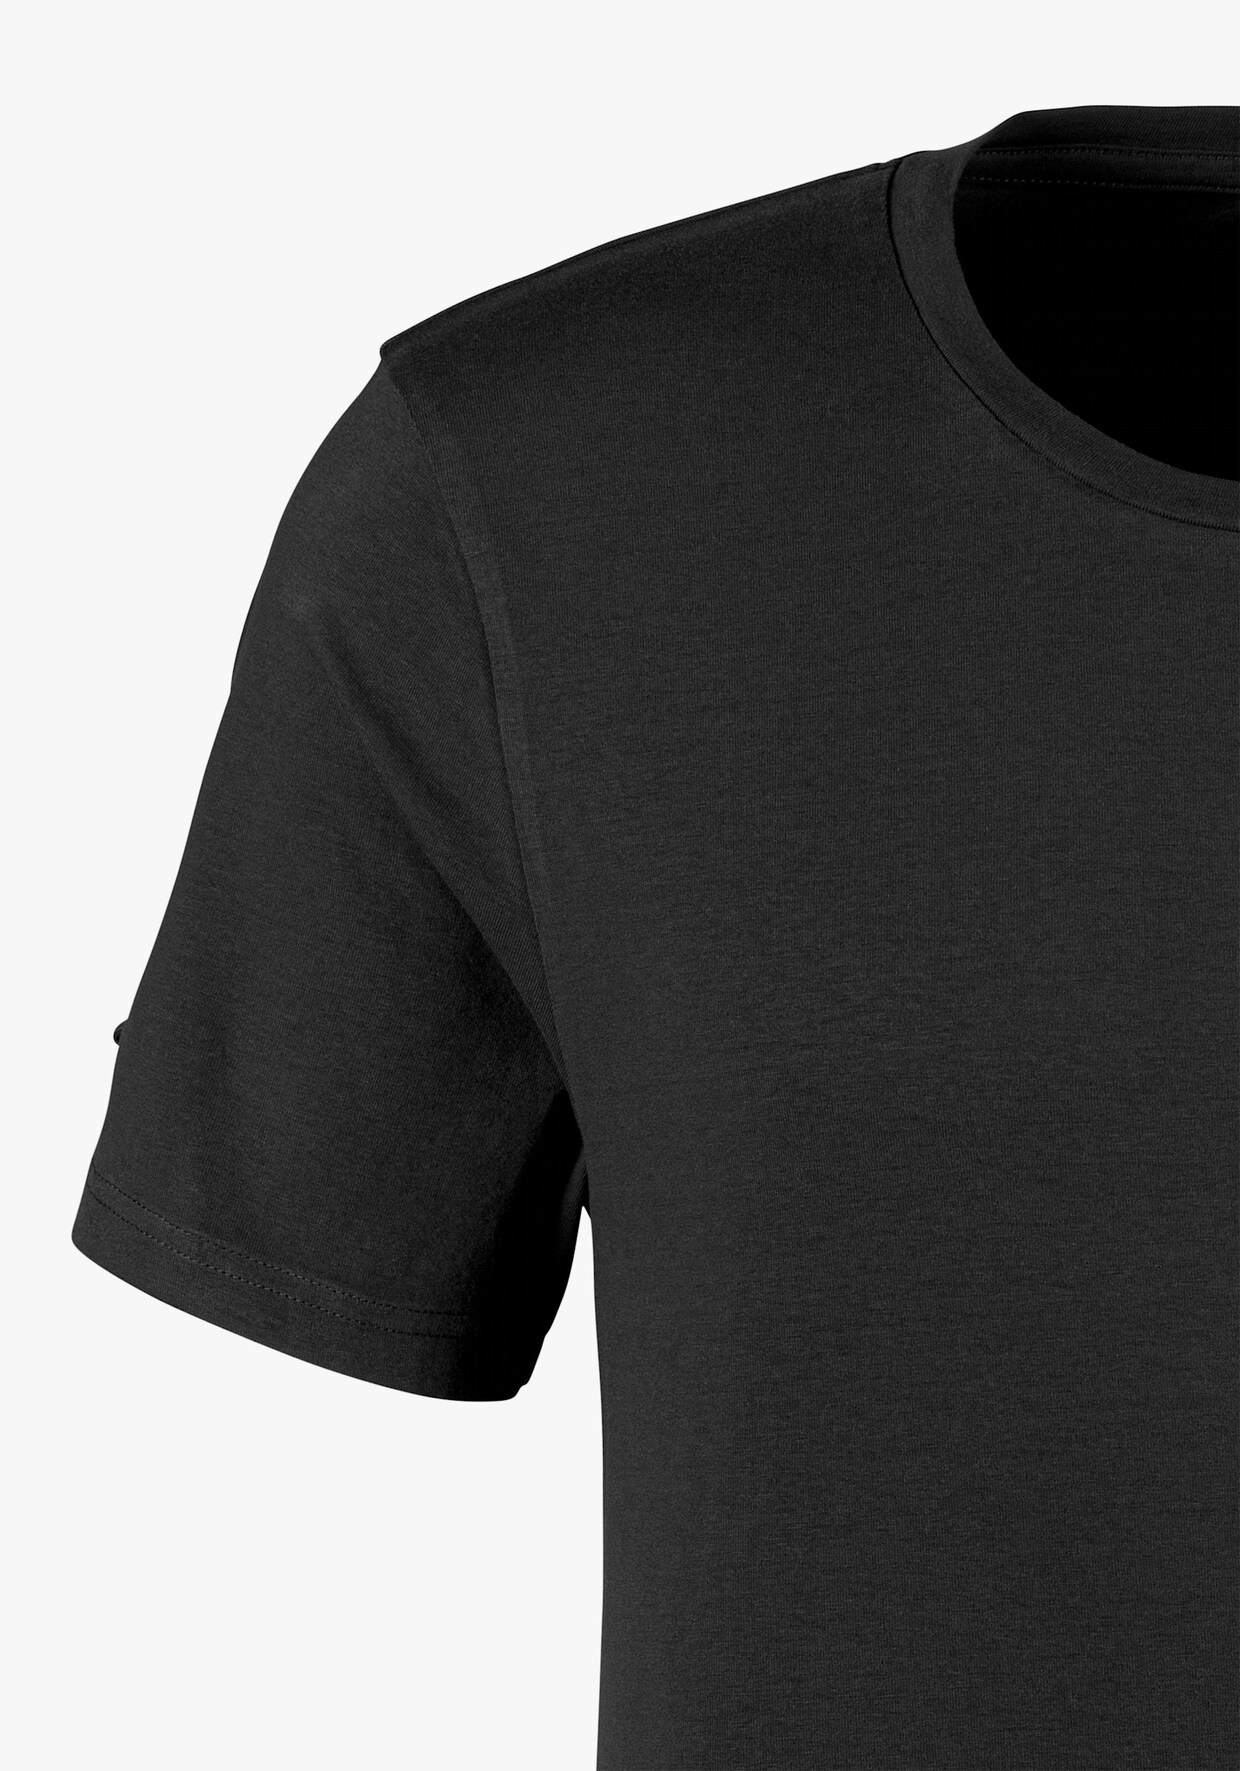 Bruno Banani T-Shirt - schwarz, grau-meliert, weiß